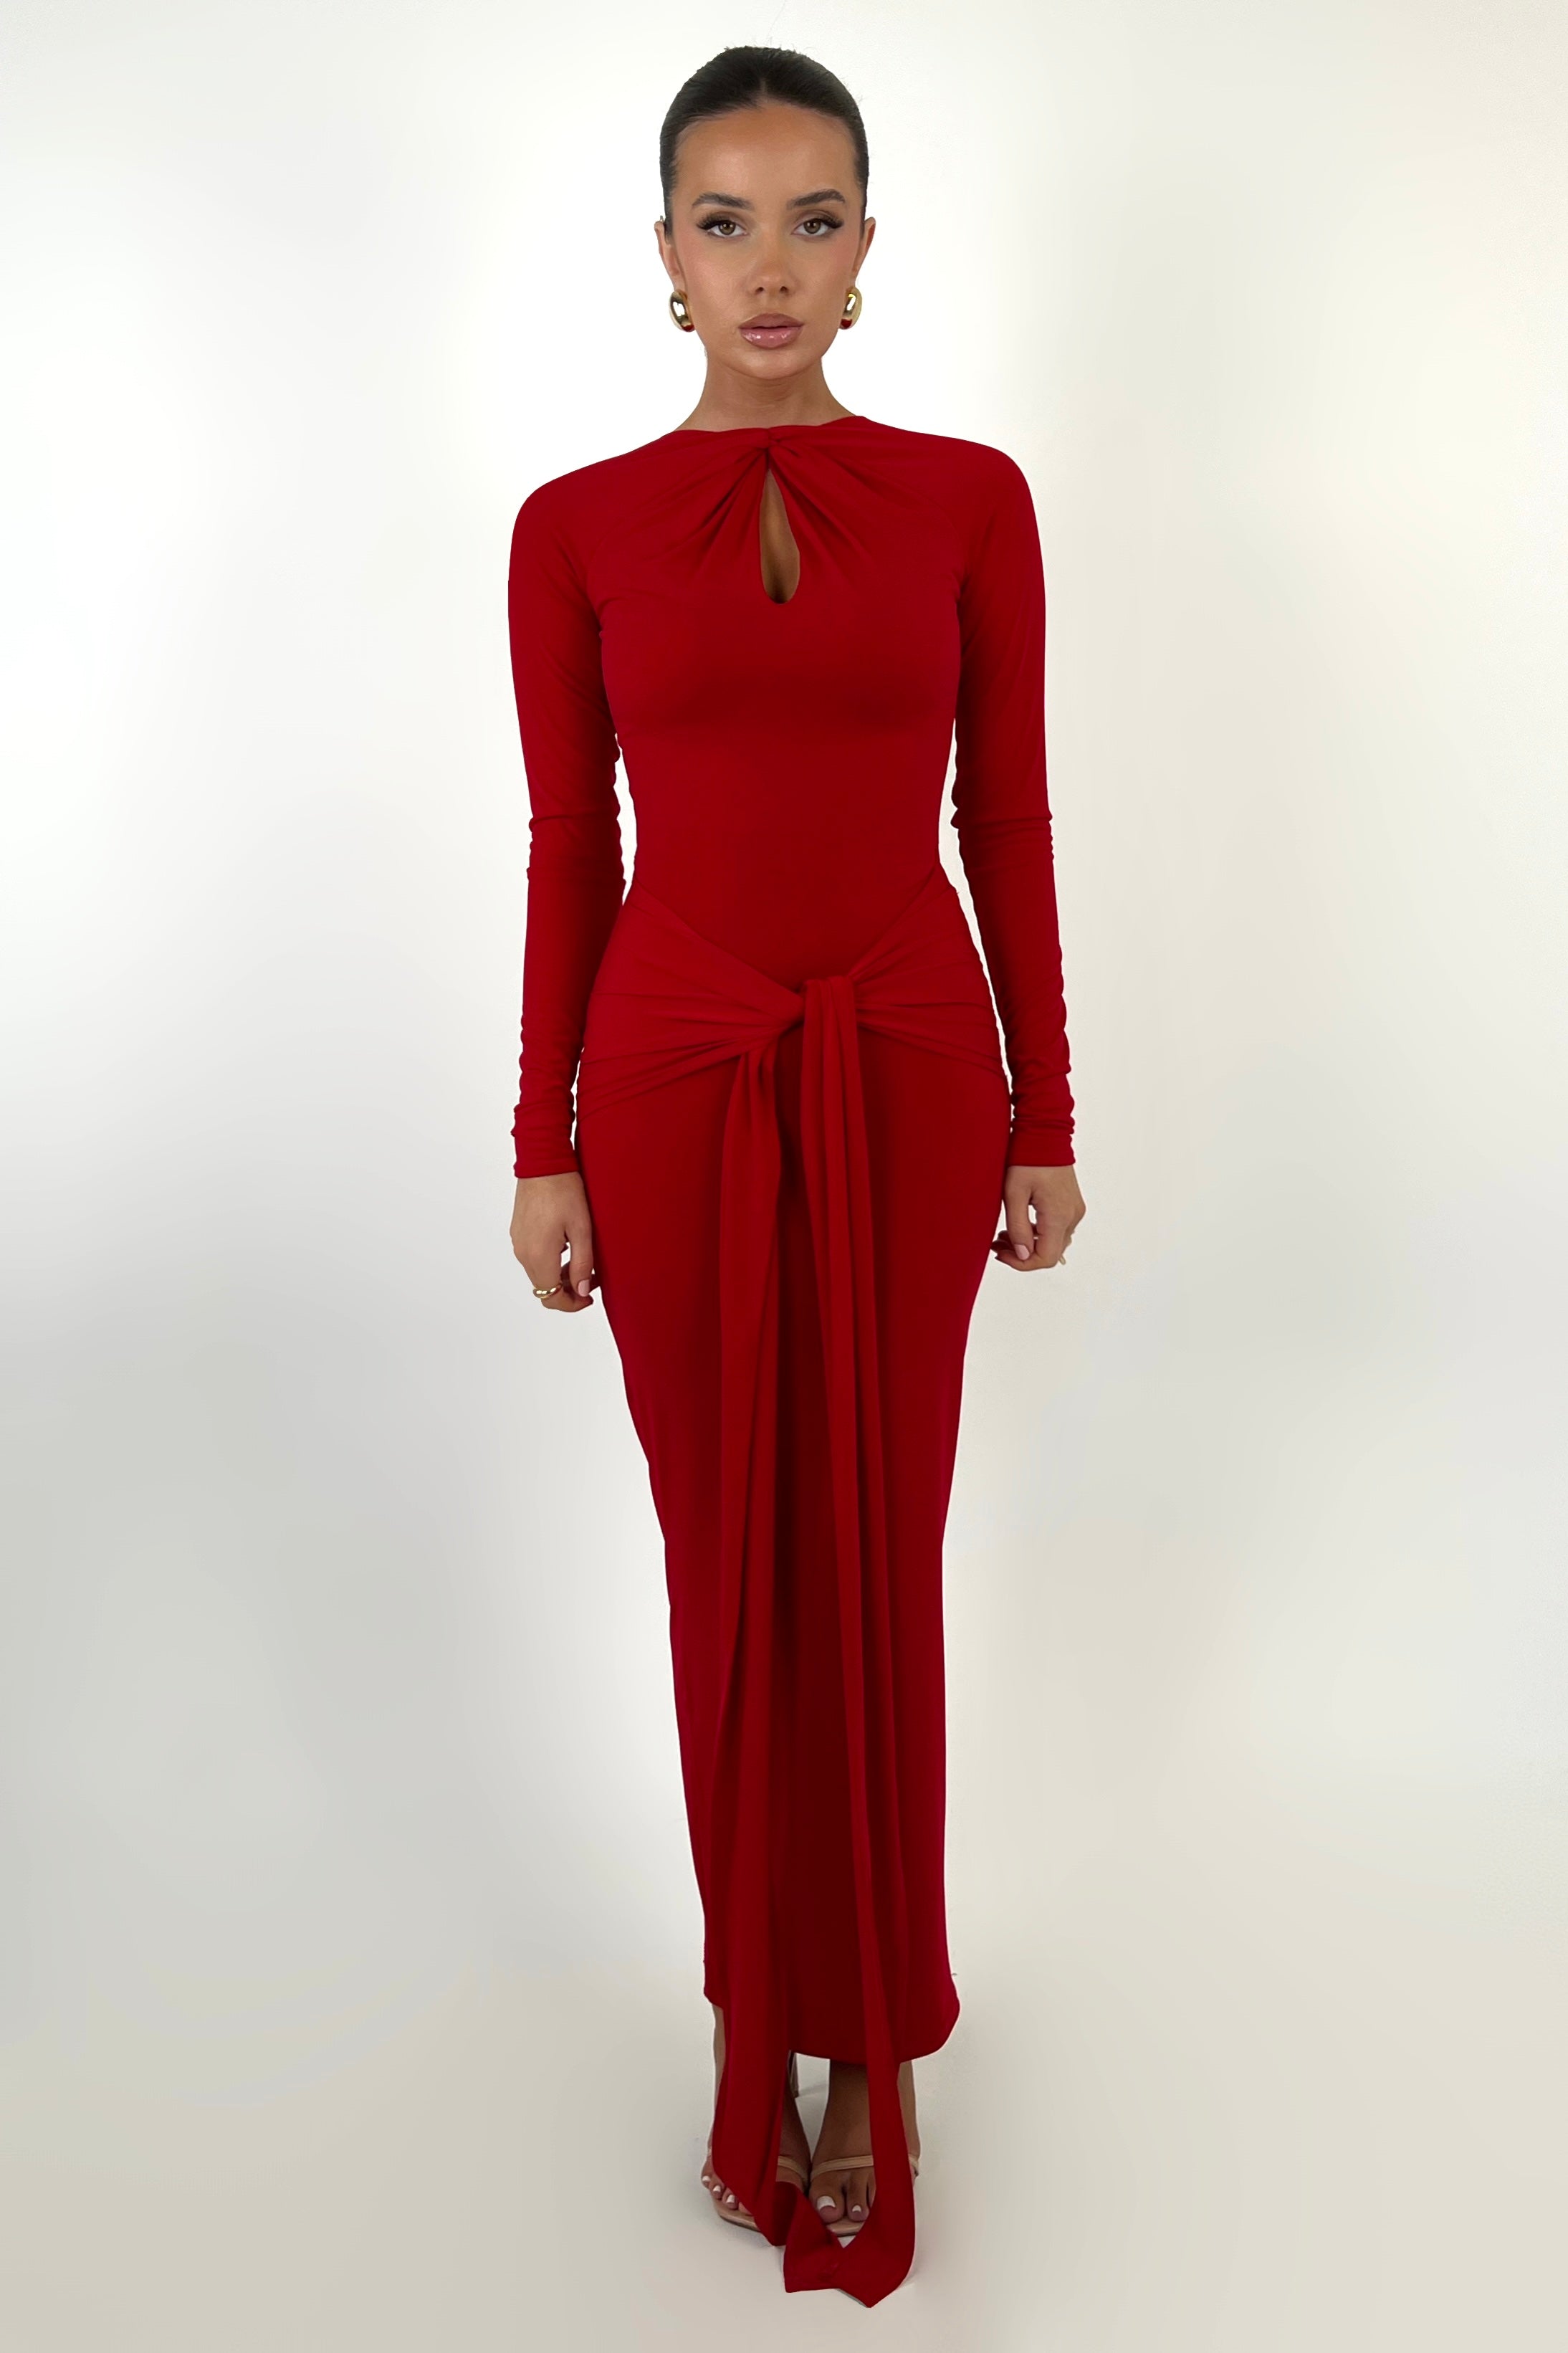 Seonie Red Dress